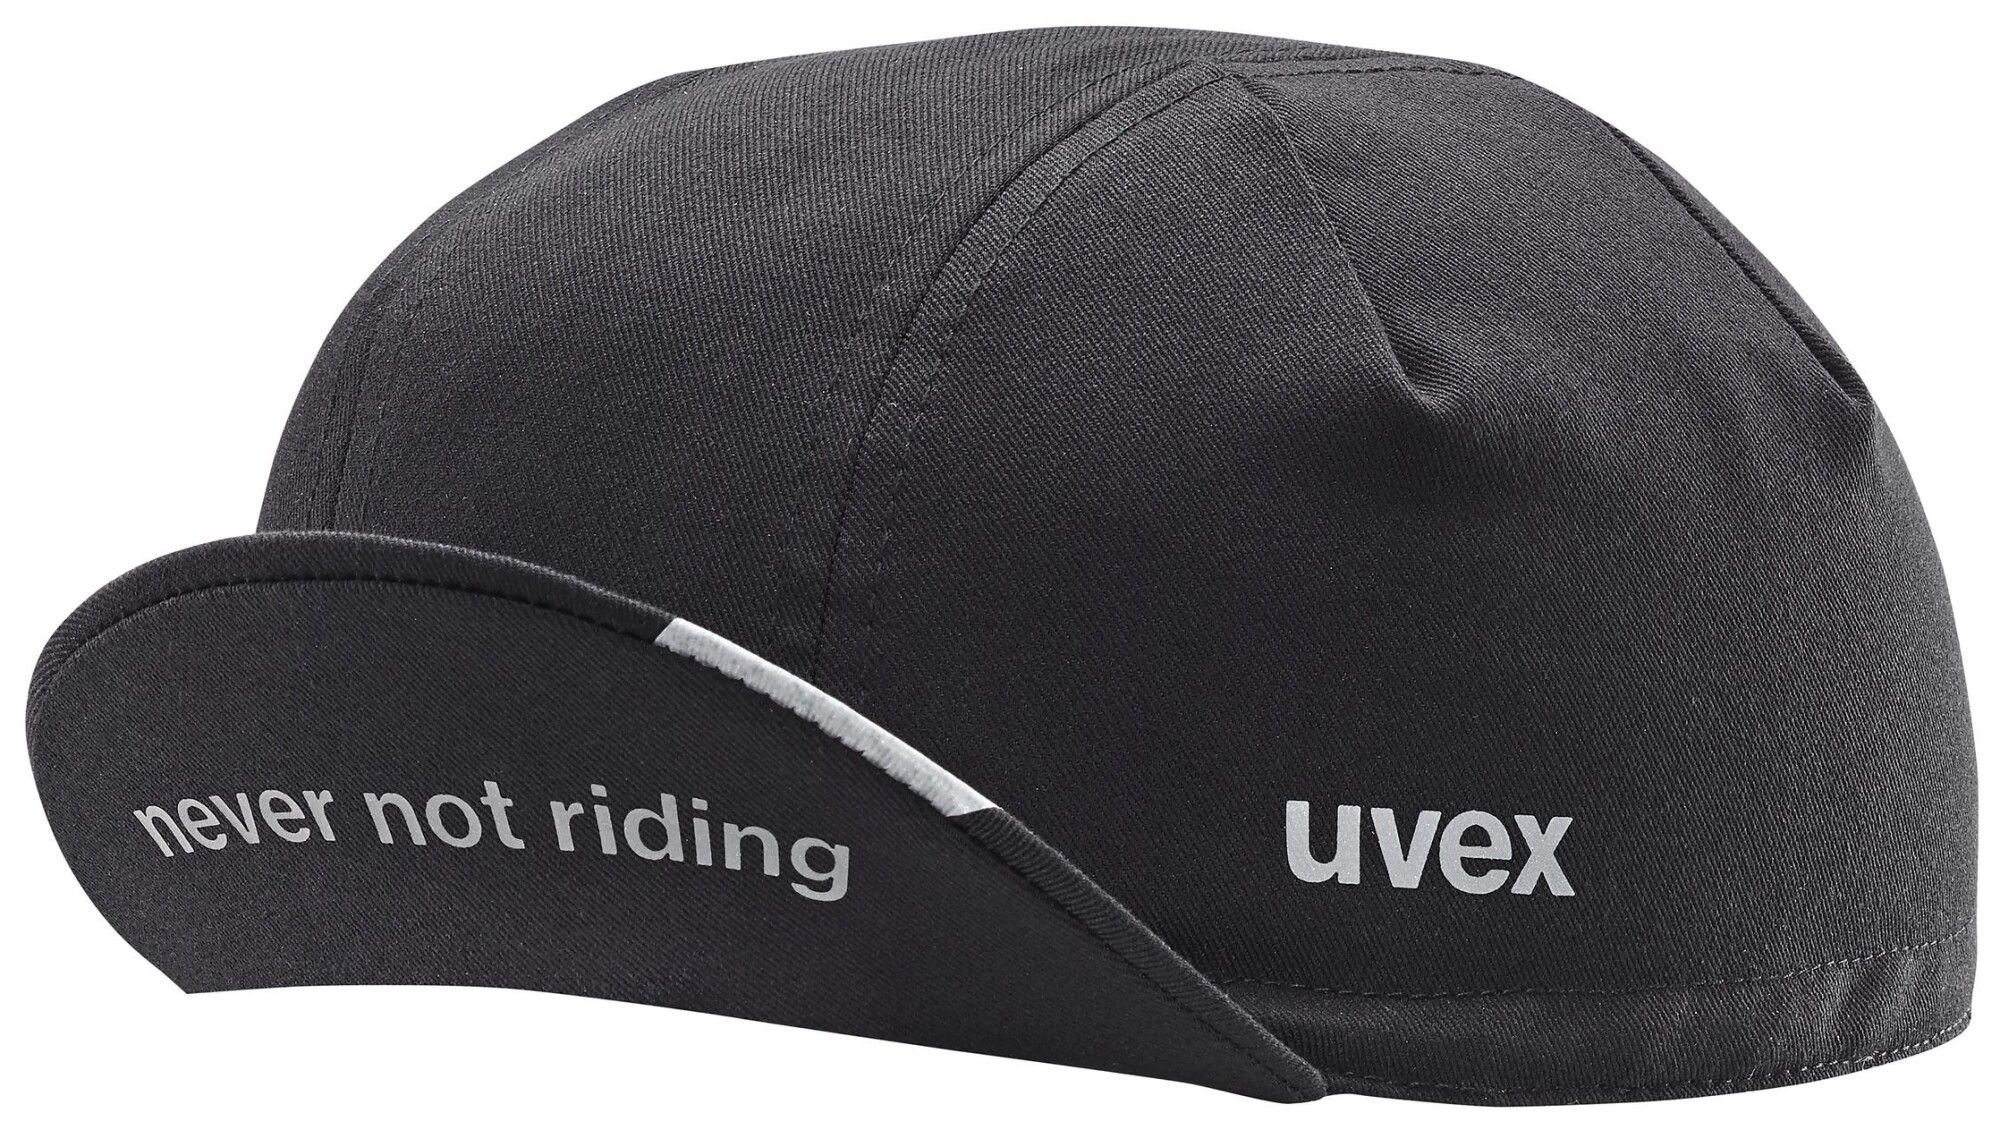 Uvex uvex cycling cap (Bild 2)